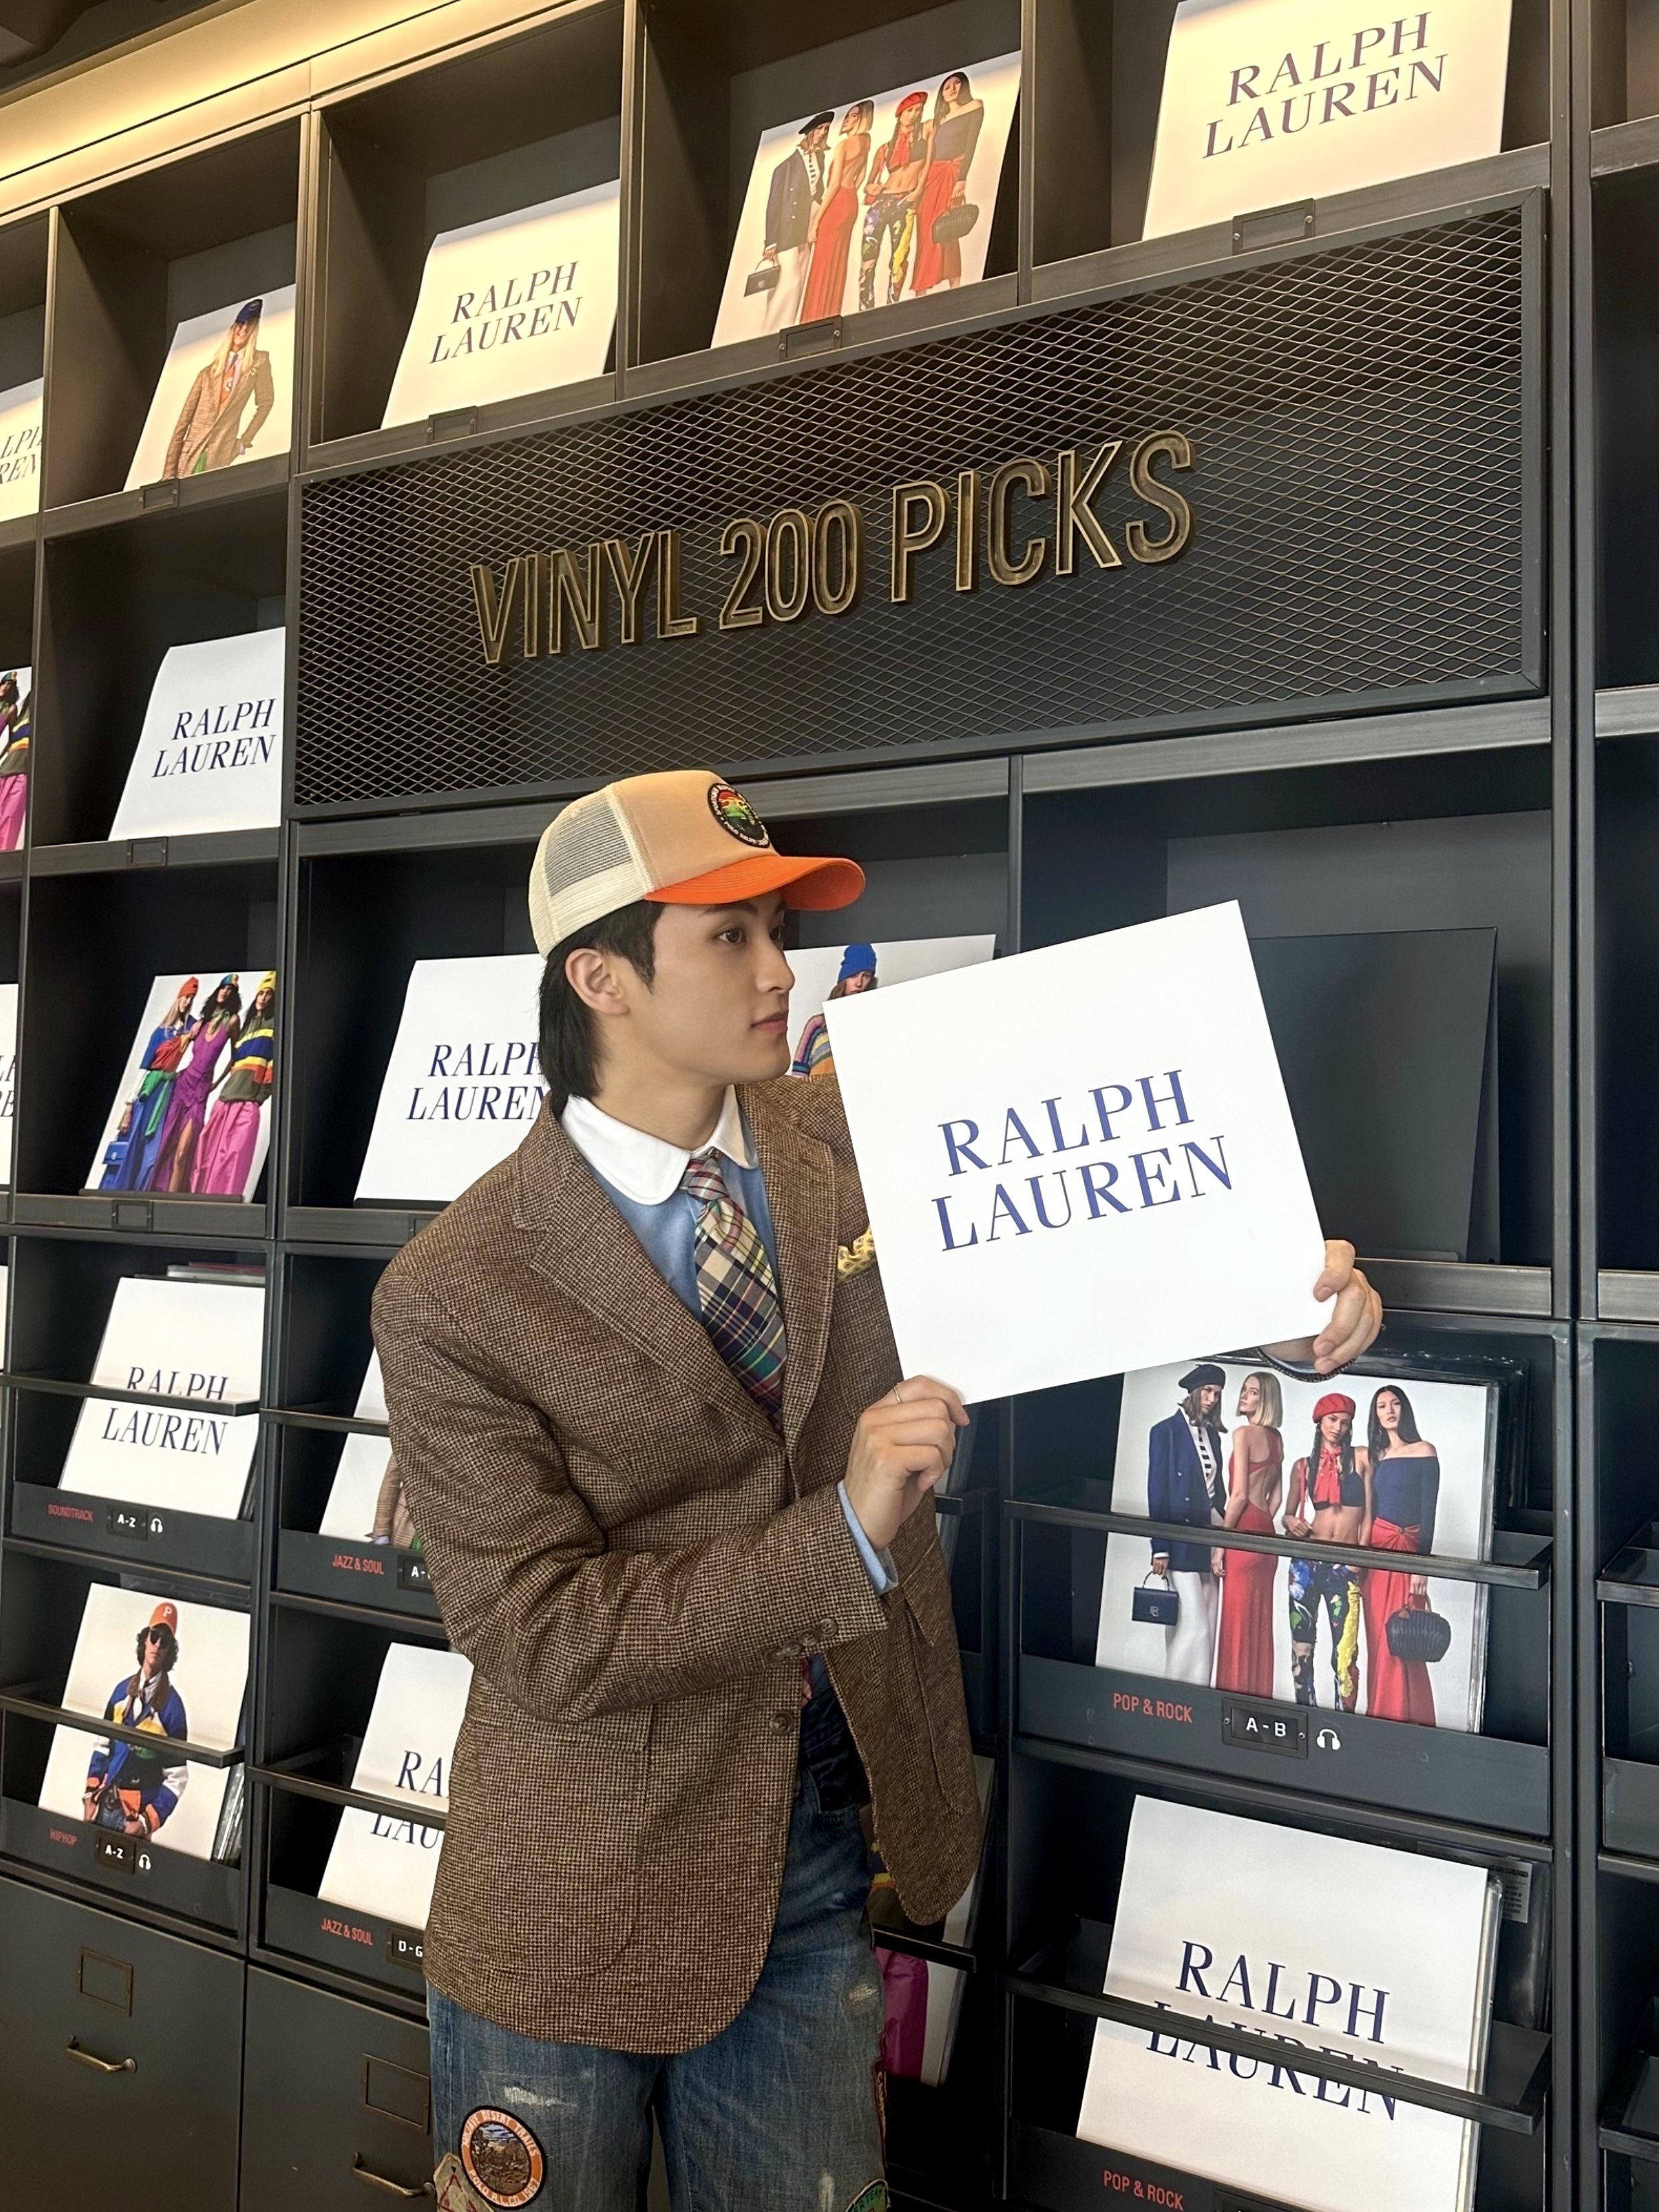 NCT's Mark chosen as a new brand ambassador for Polo Ralph Lauren